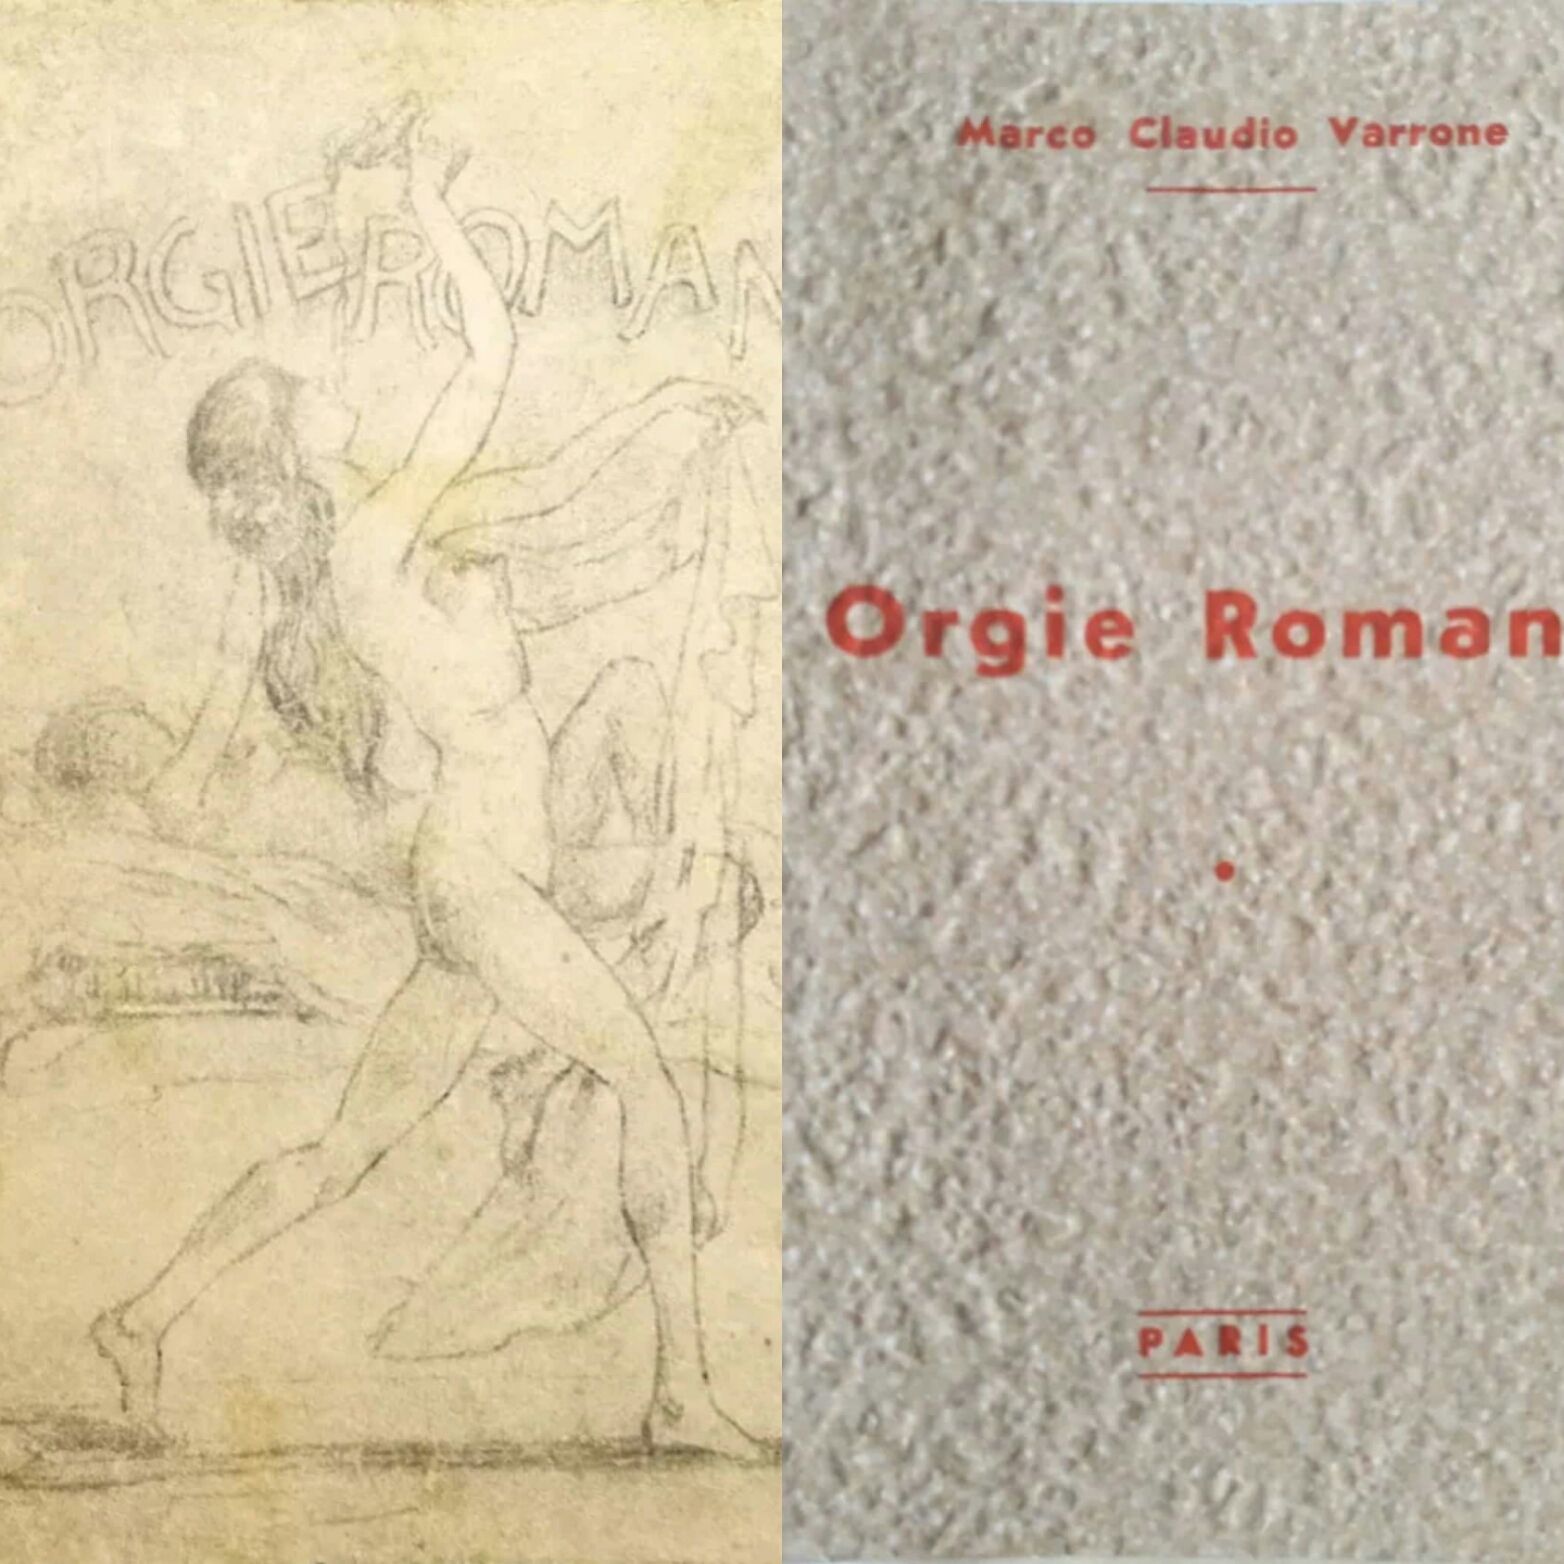 …su eBay c’è “Orgie romane” di Marco Claudio Varrone